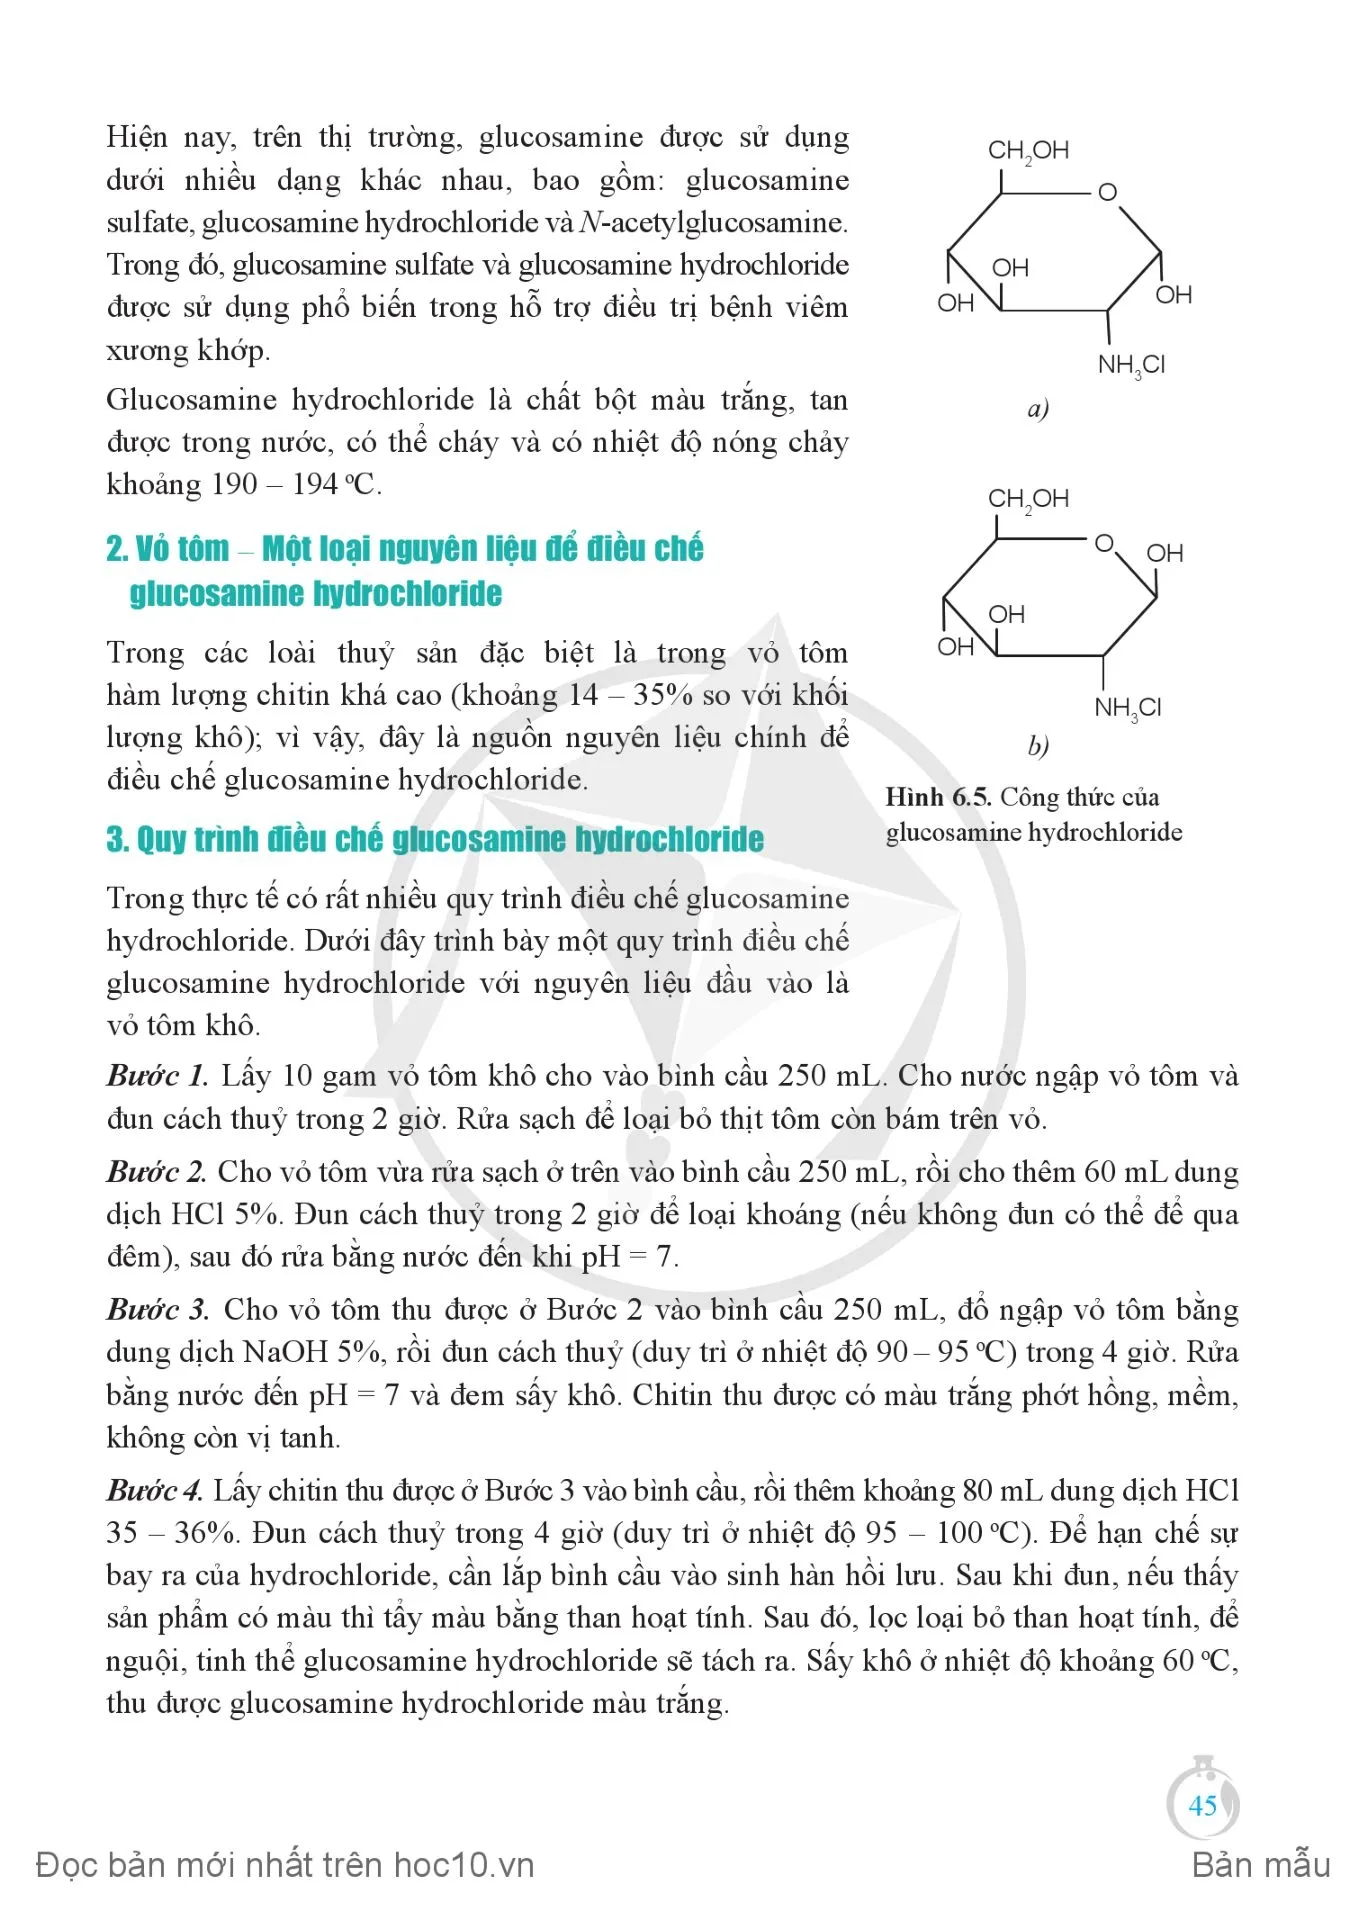 Bài 6. Điều chế glucosamine hydrochloride từ vỏ tôm...